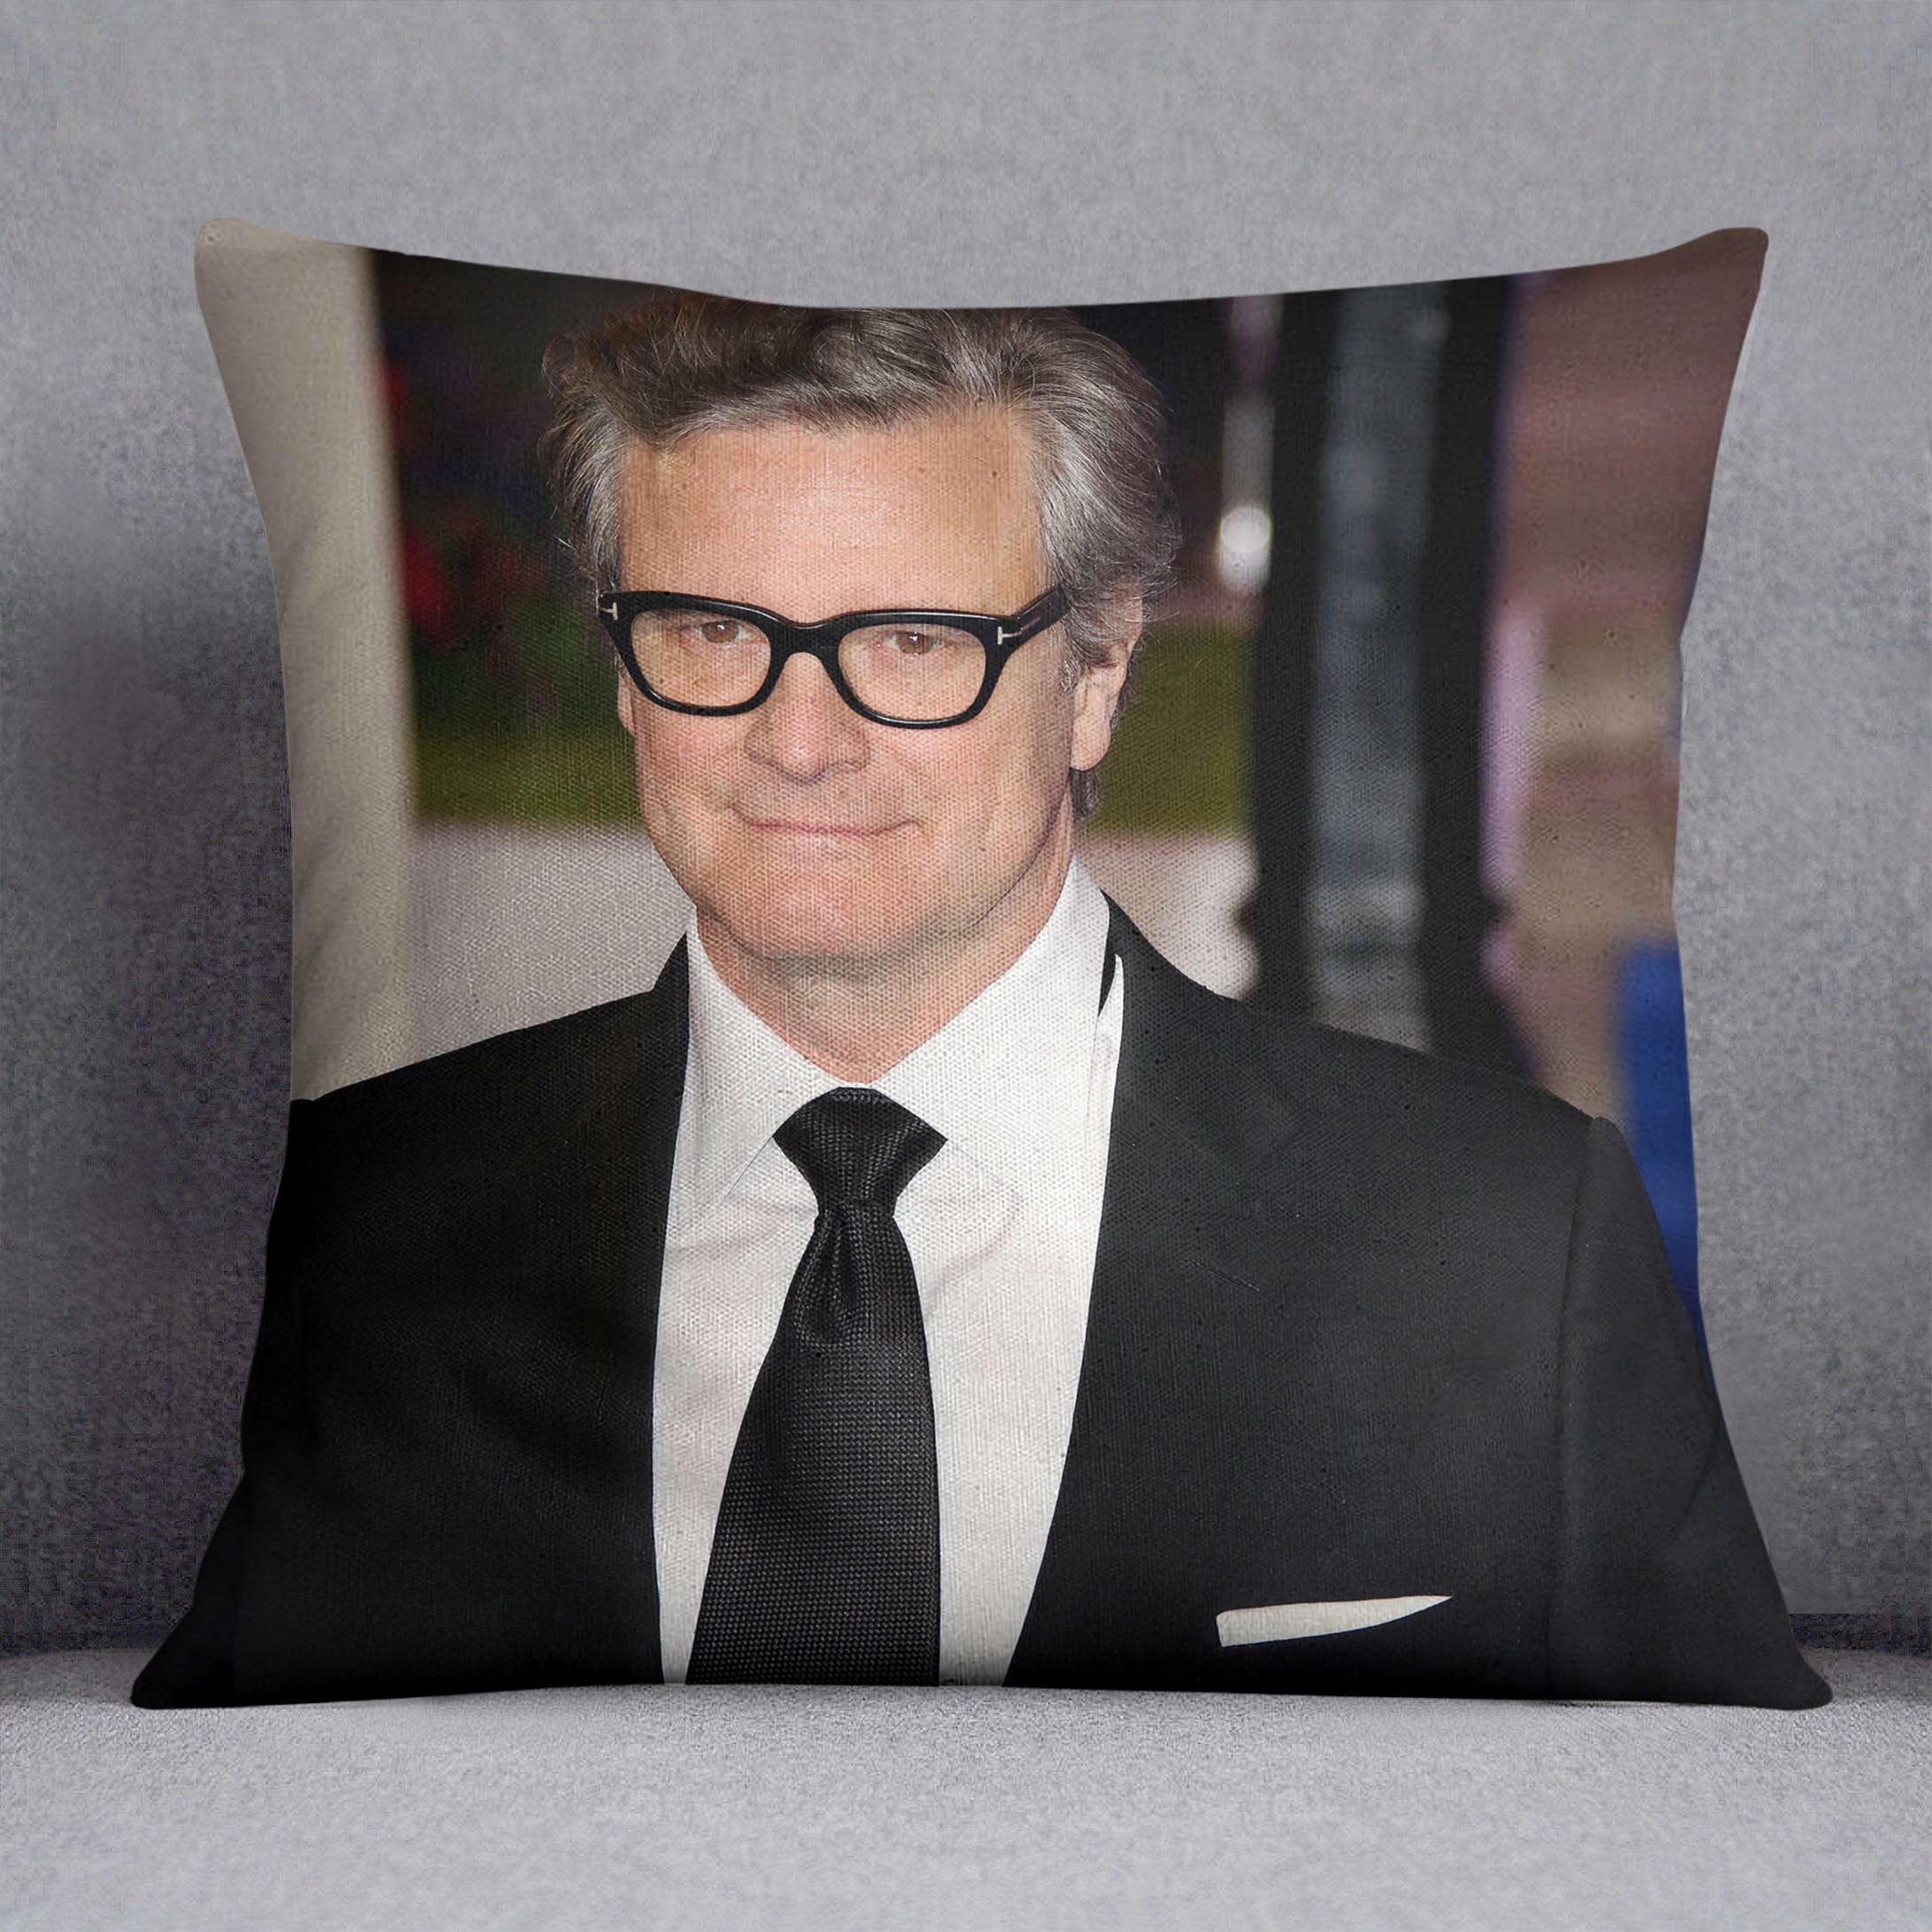 Colin Firth at a premiere Cushion